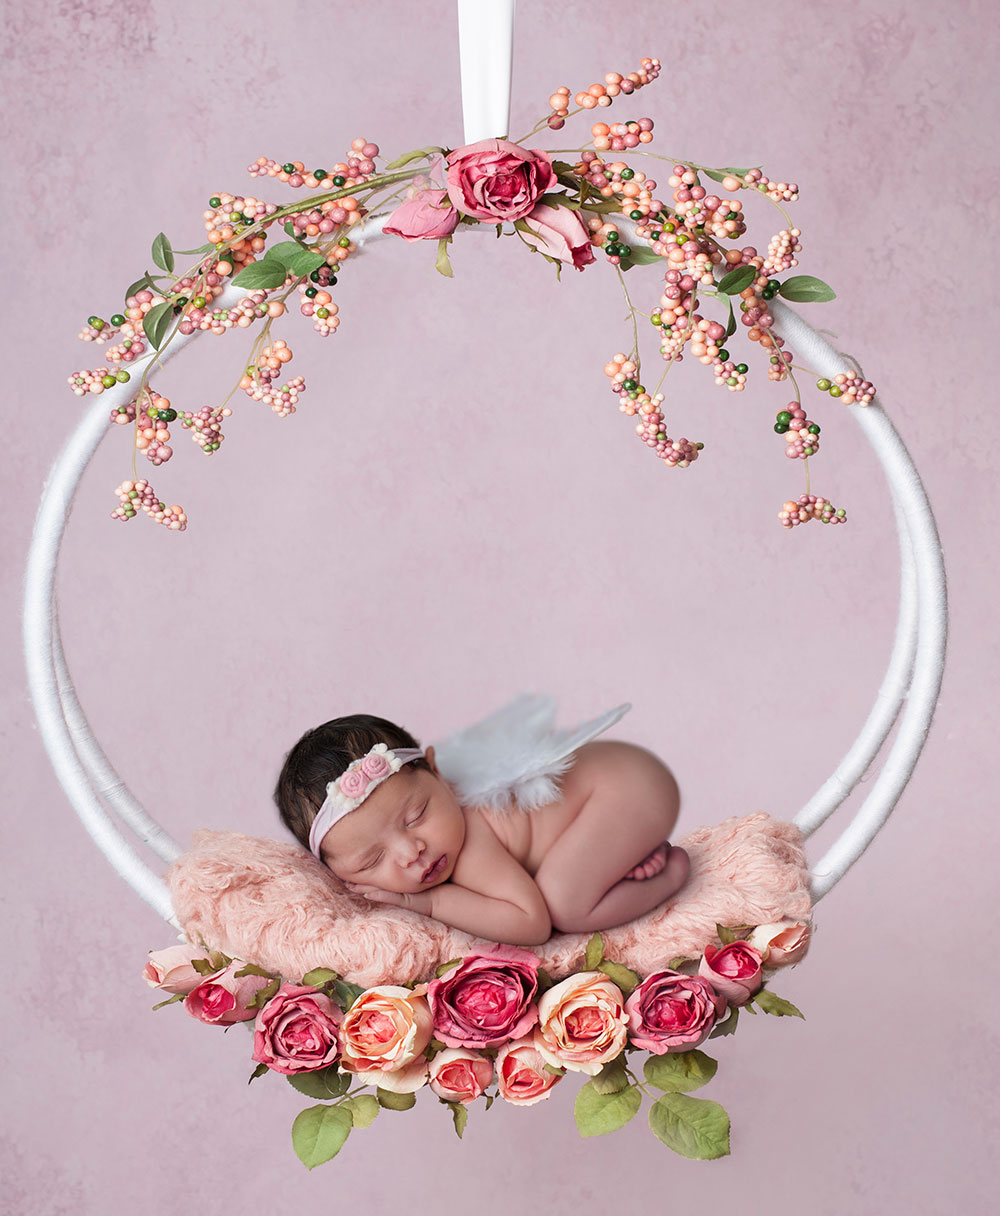 Newborn Baby Photo Retouching, Composite Creation